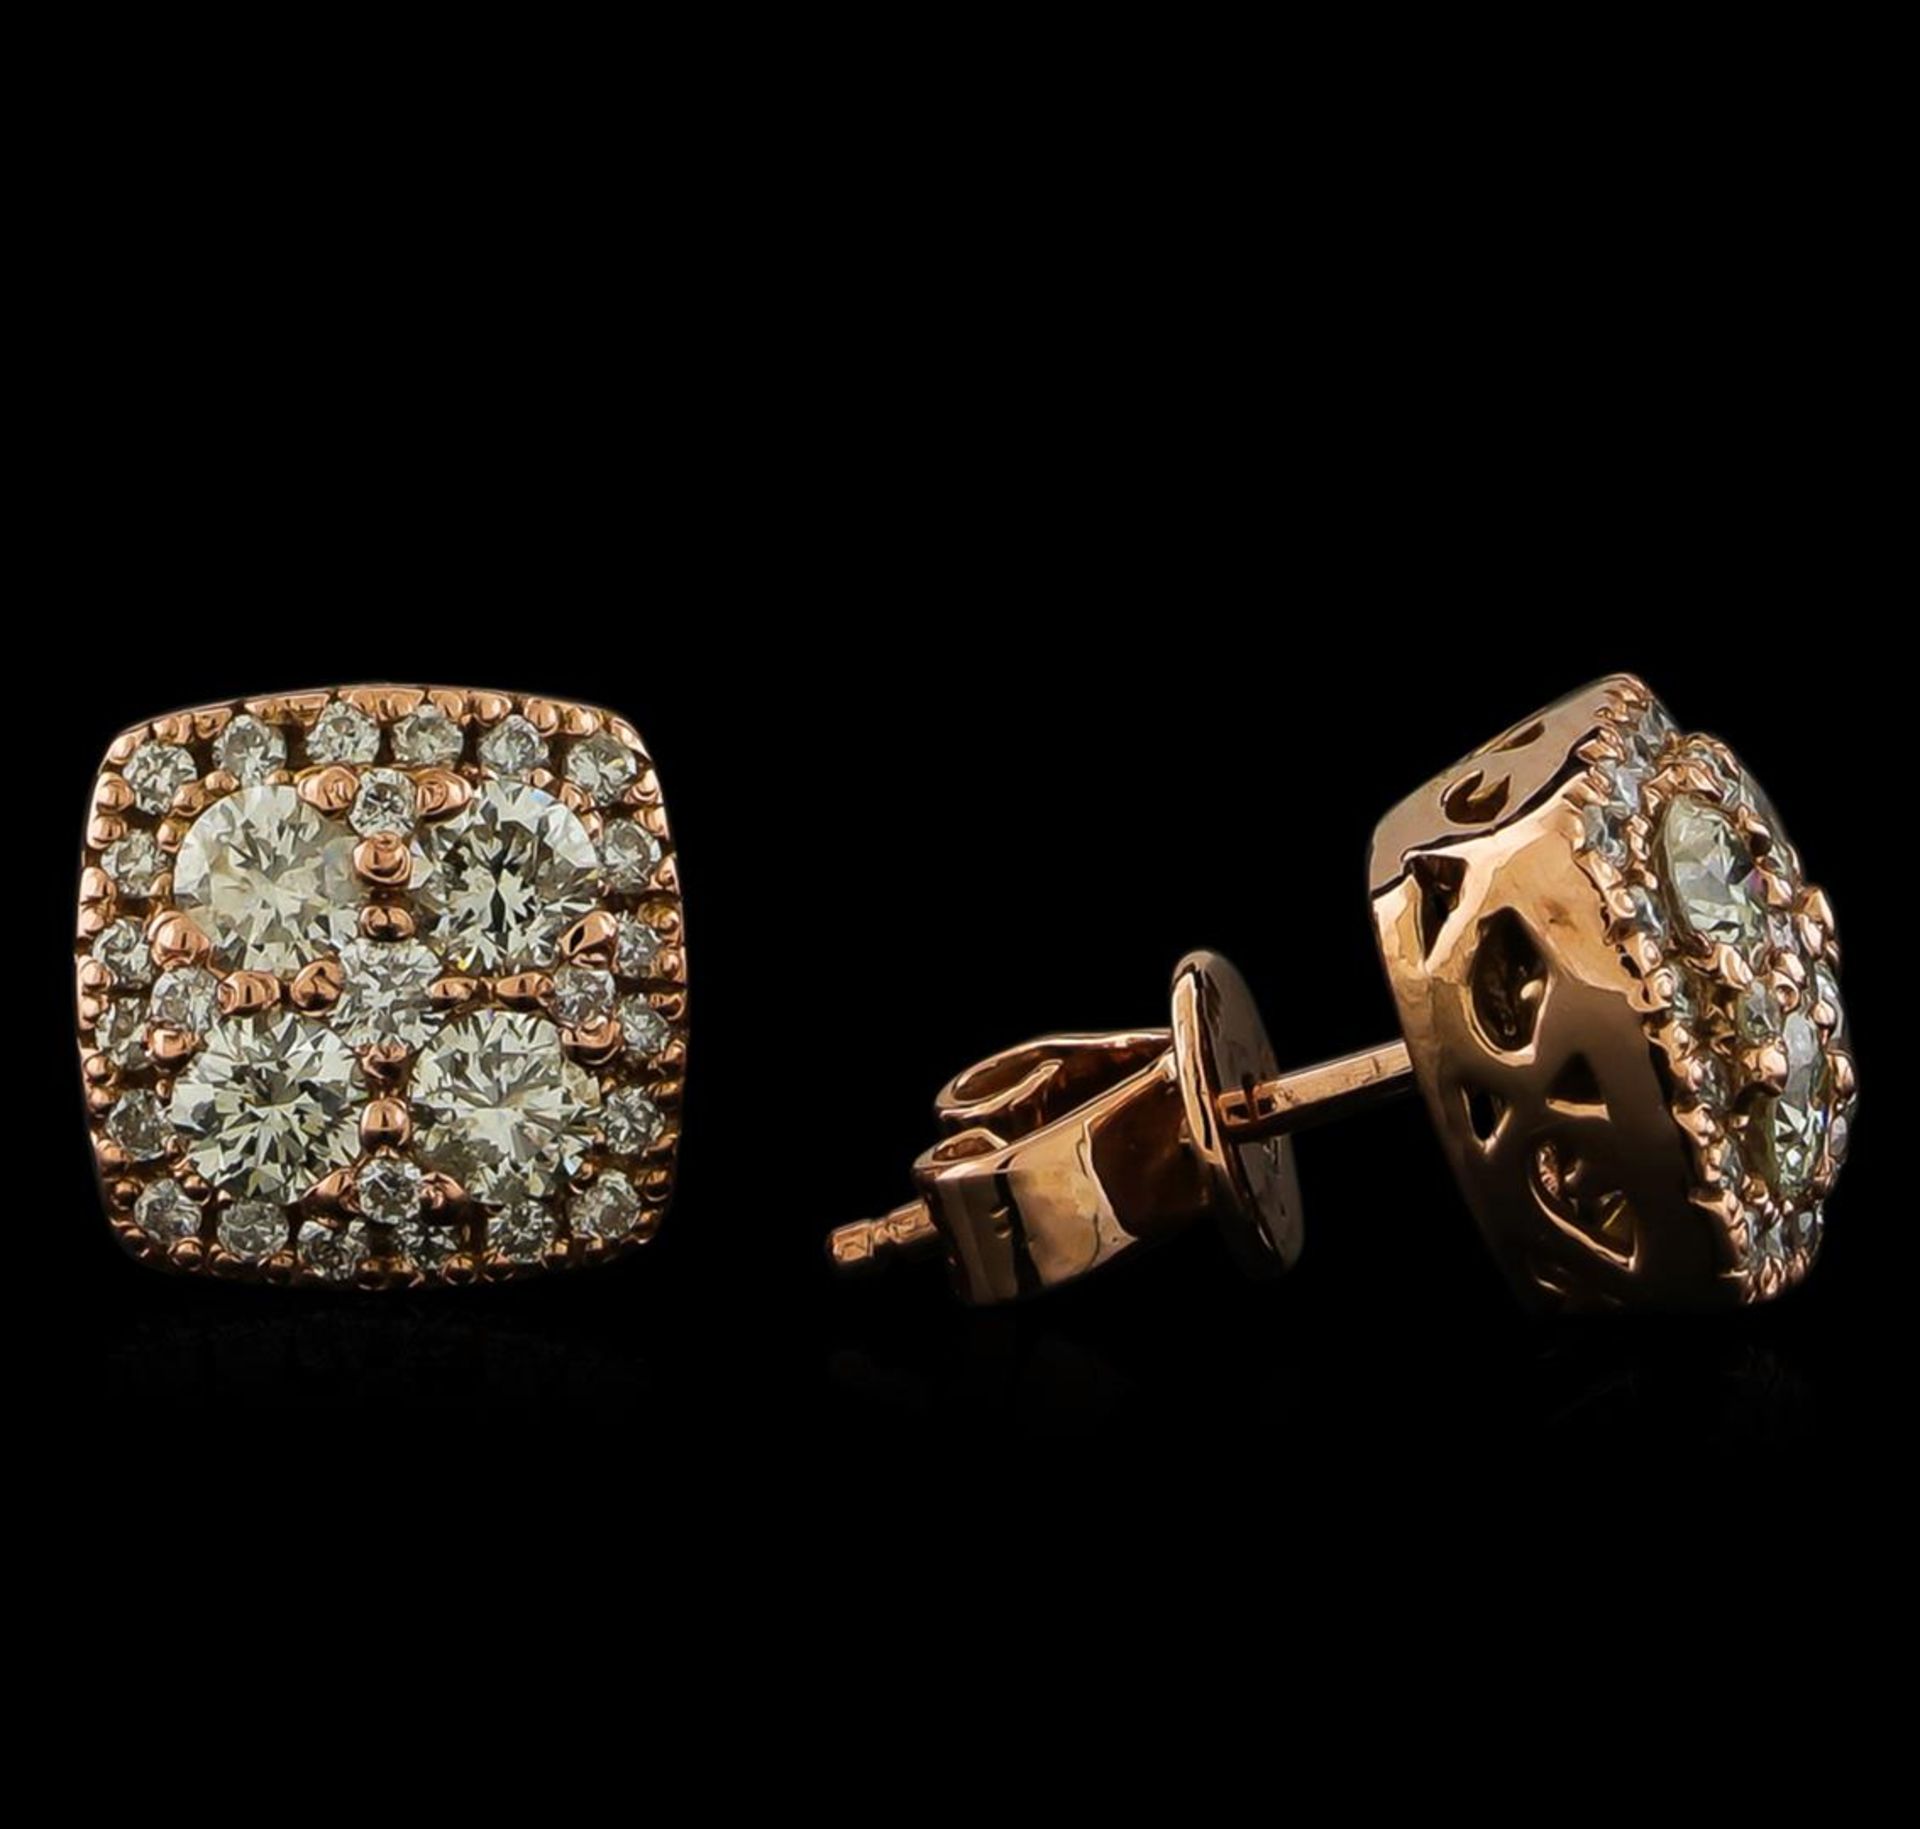 0.97 ctw Diamond Earrings - 14KT Rose Gold - Image 2 of 3